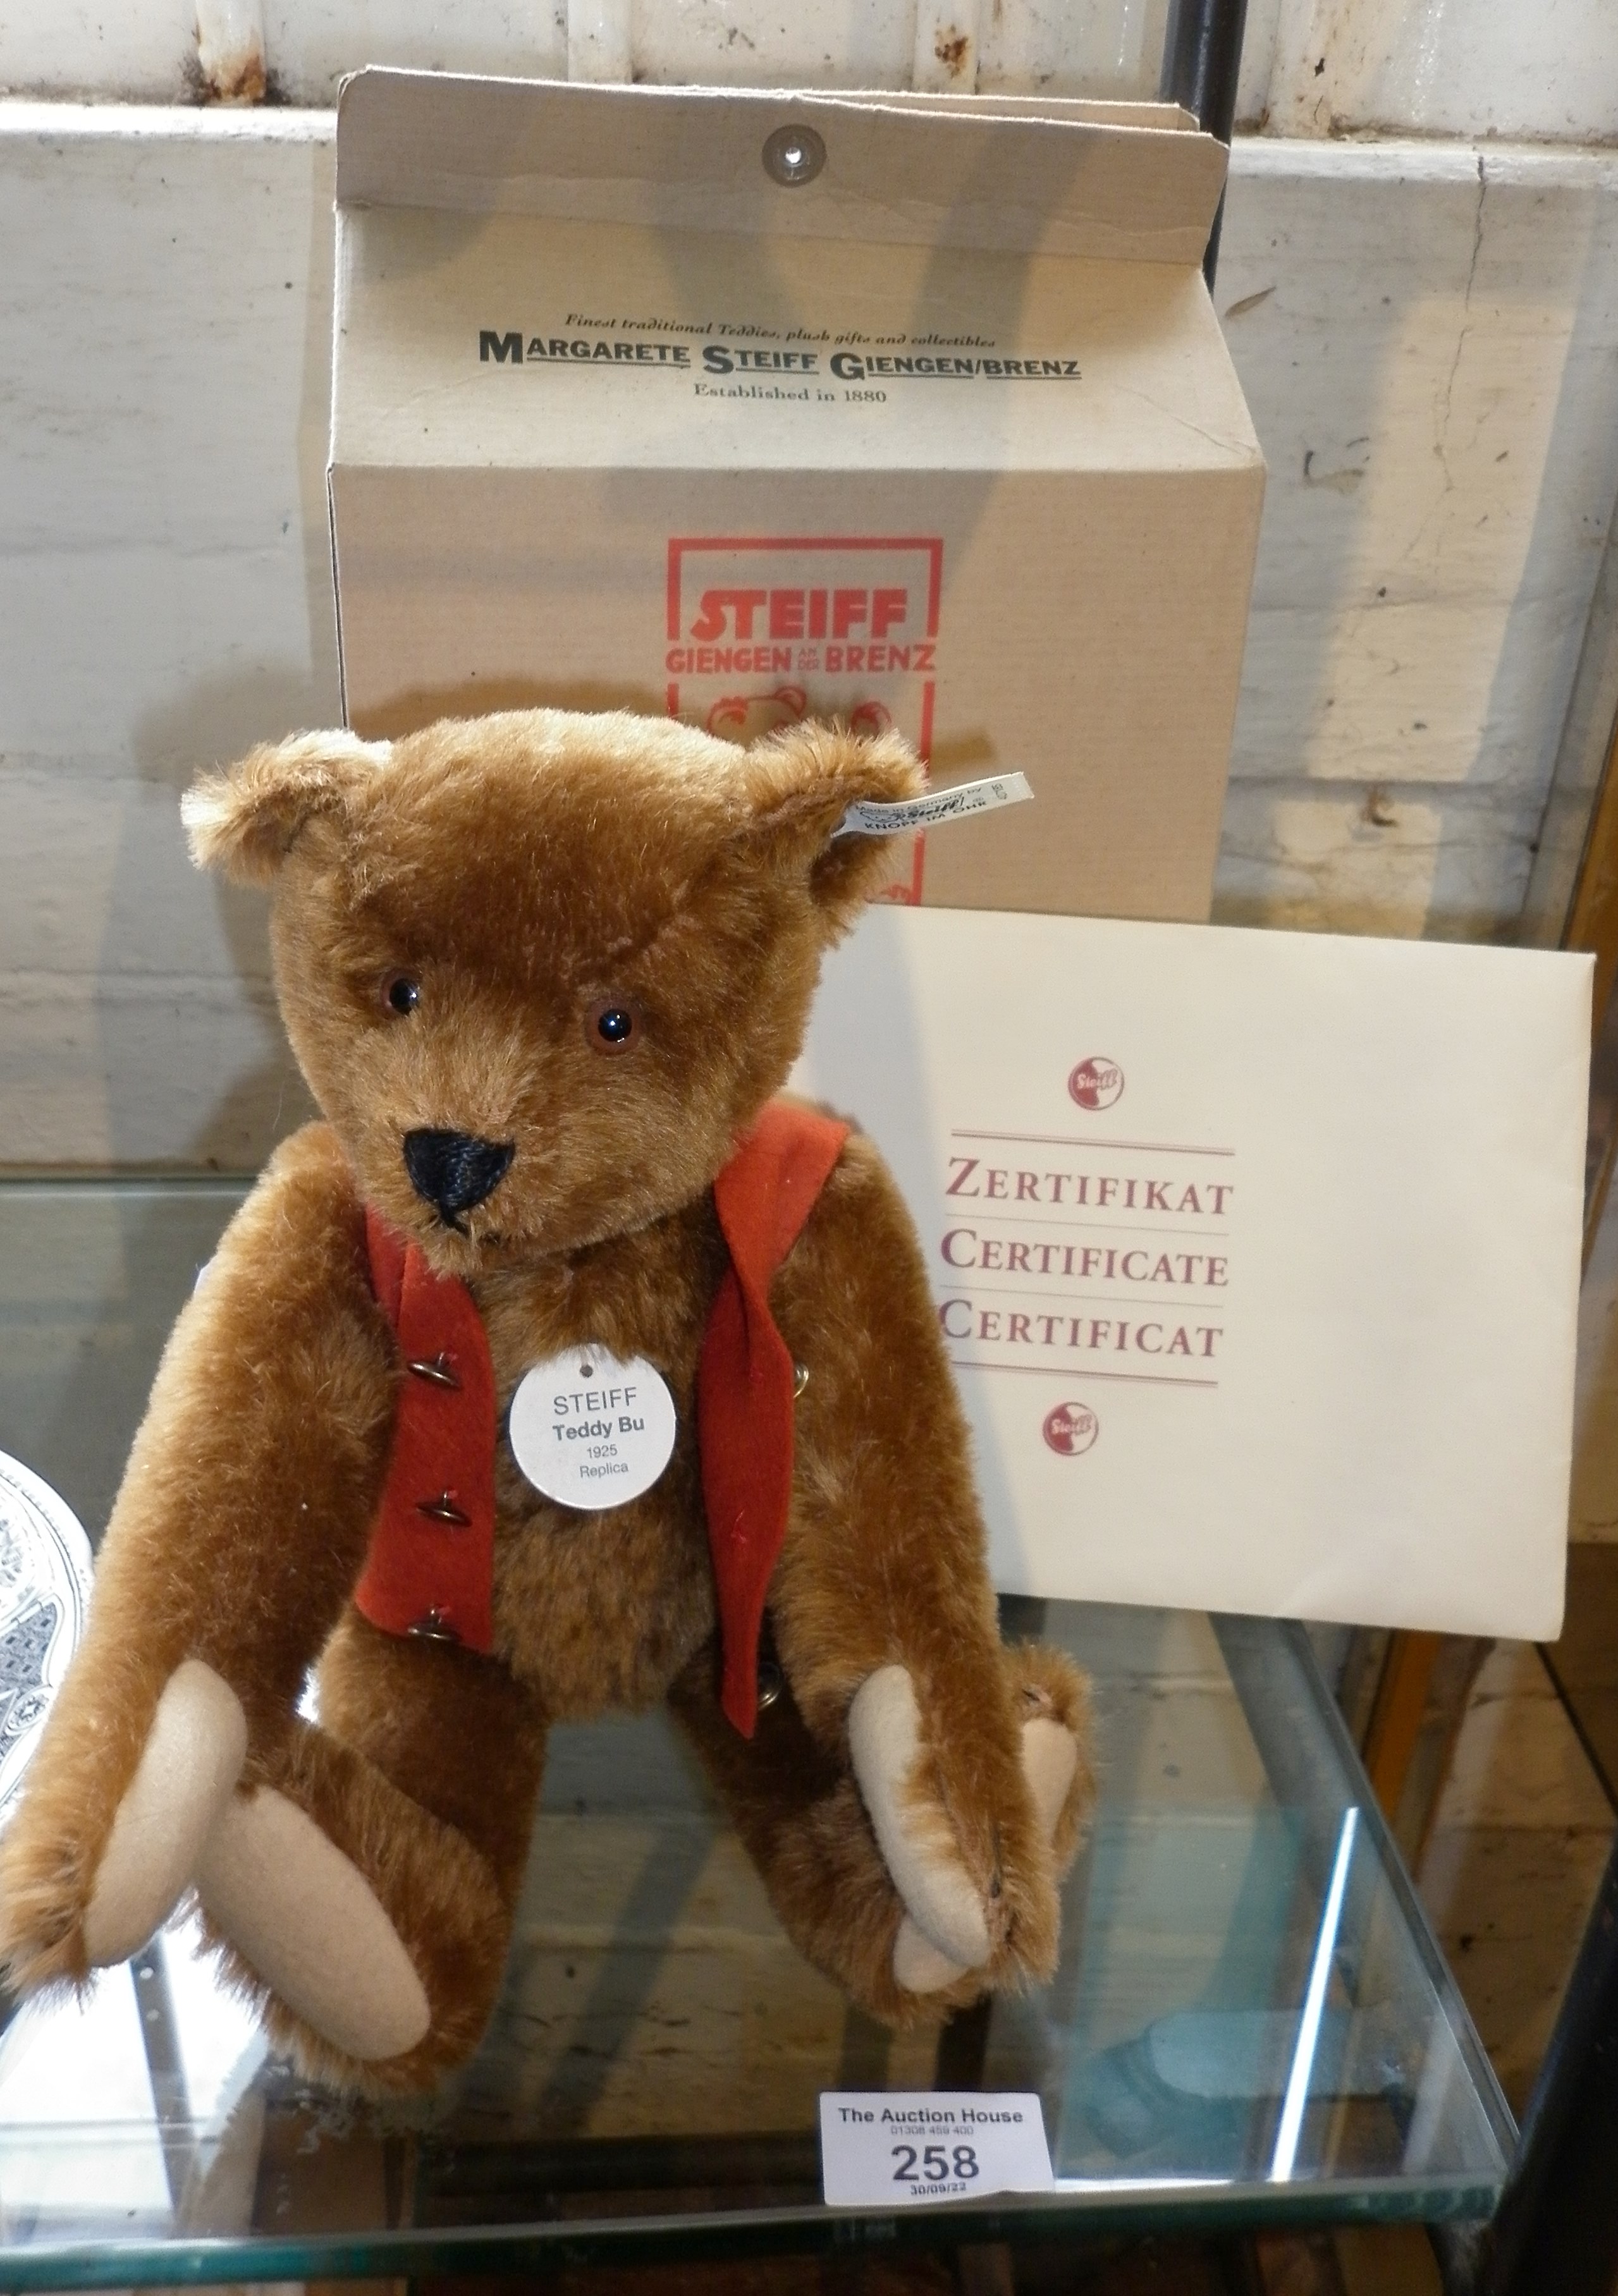 Steiff "Teddy Bu 1925" Bear, COA, with ear button and card box